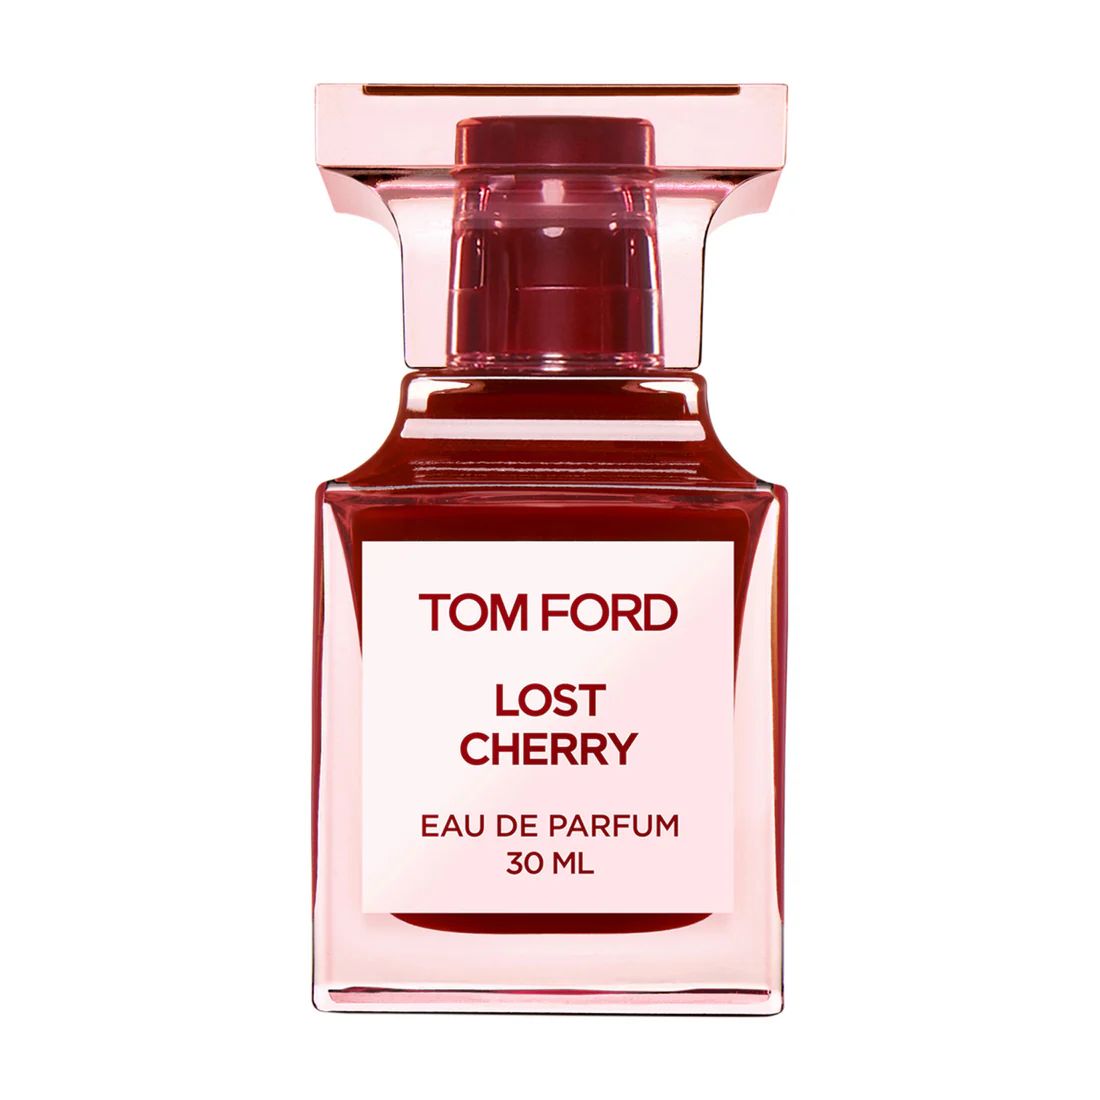 Lost Cherry Eau de Parfum – Tom Ford | Bluemercury, Inc.